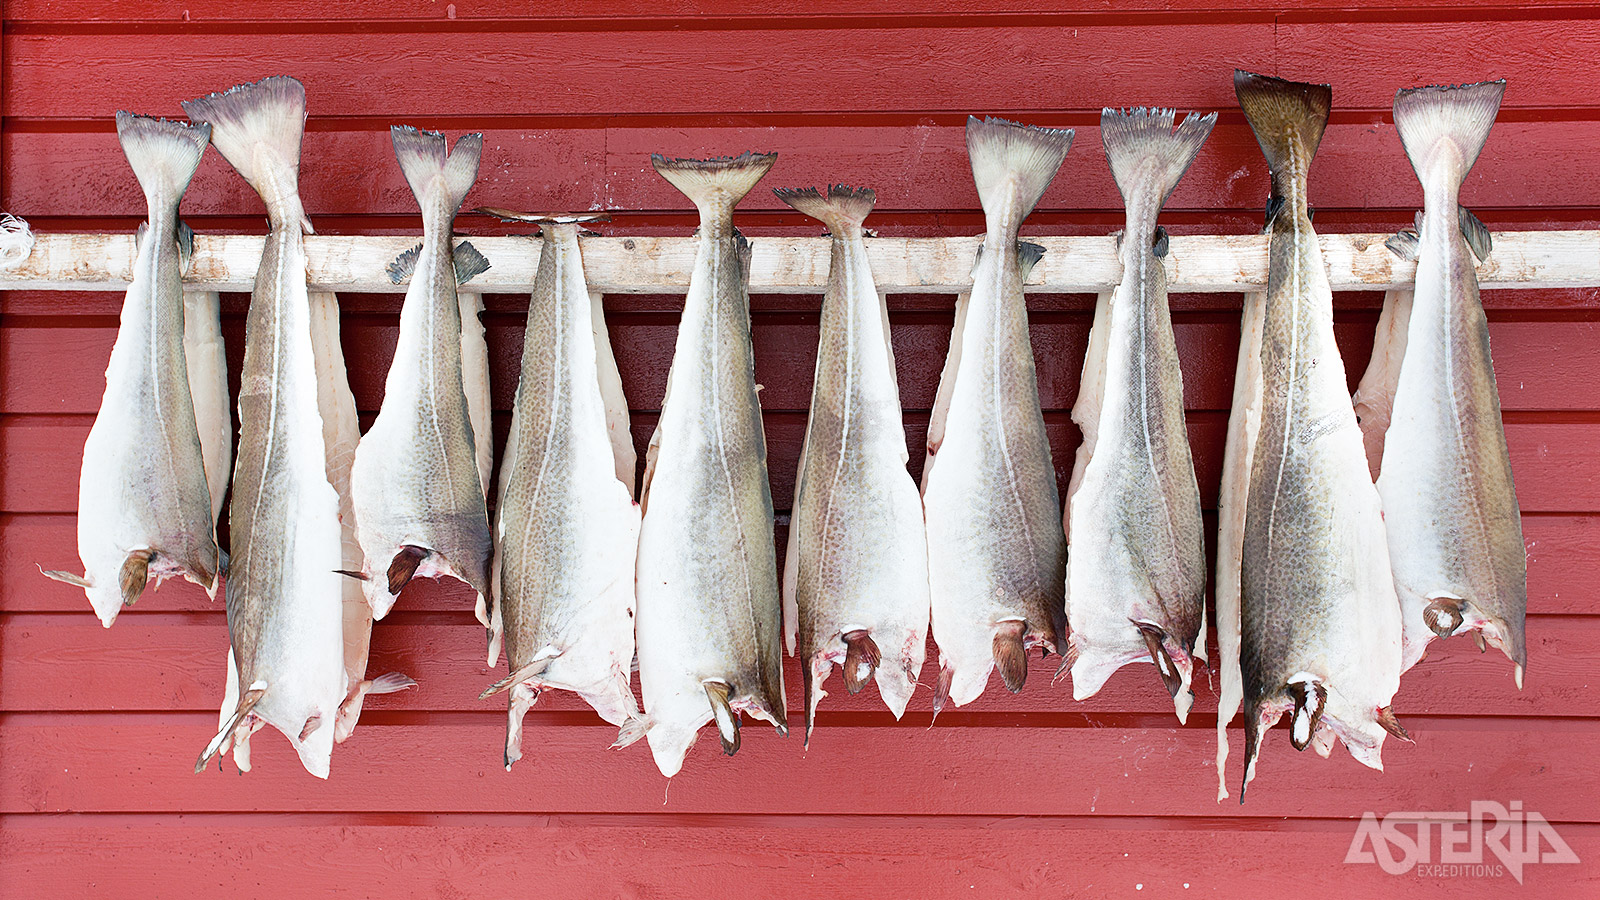 Haring, hét exportproduct van de eilandengroep Lofoten